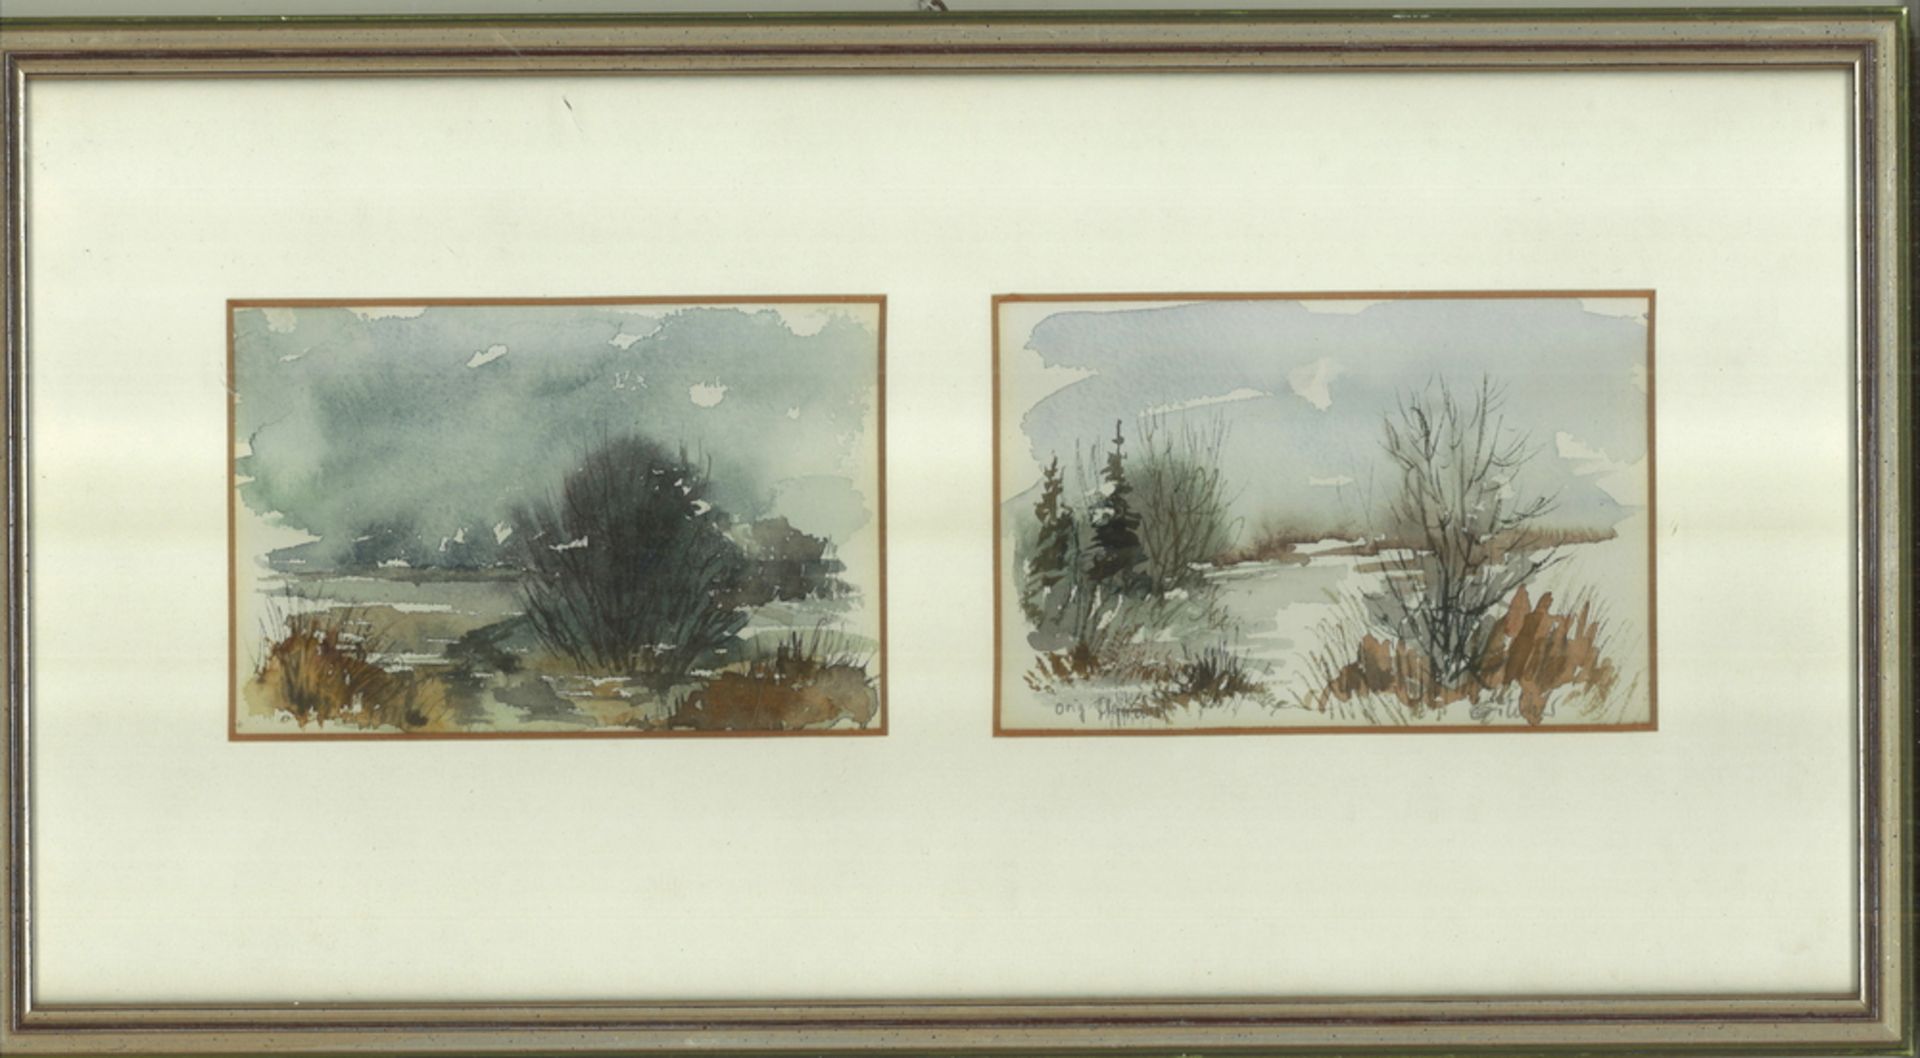 2 original Landschafts Aquarelle hinter Glas gerahmt, rechts unleserliche Signatur. Gesamtmaße: Höhe